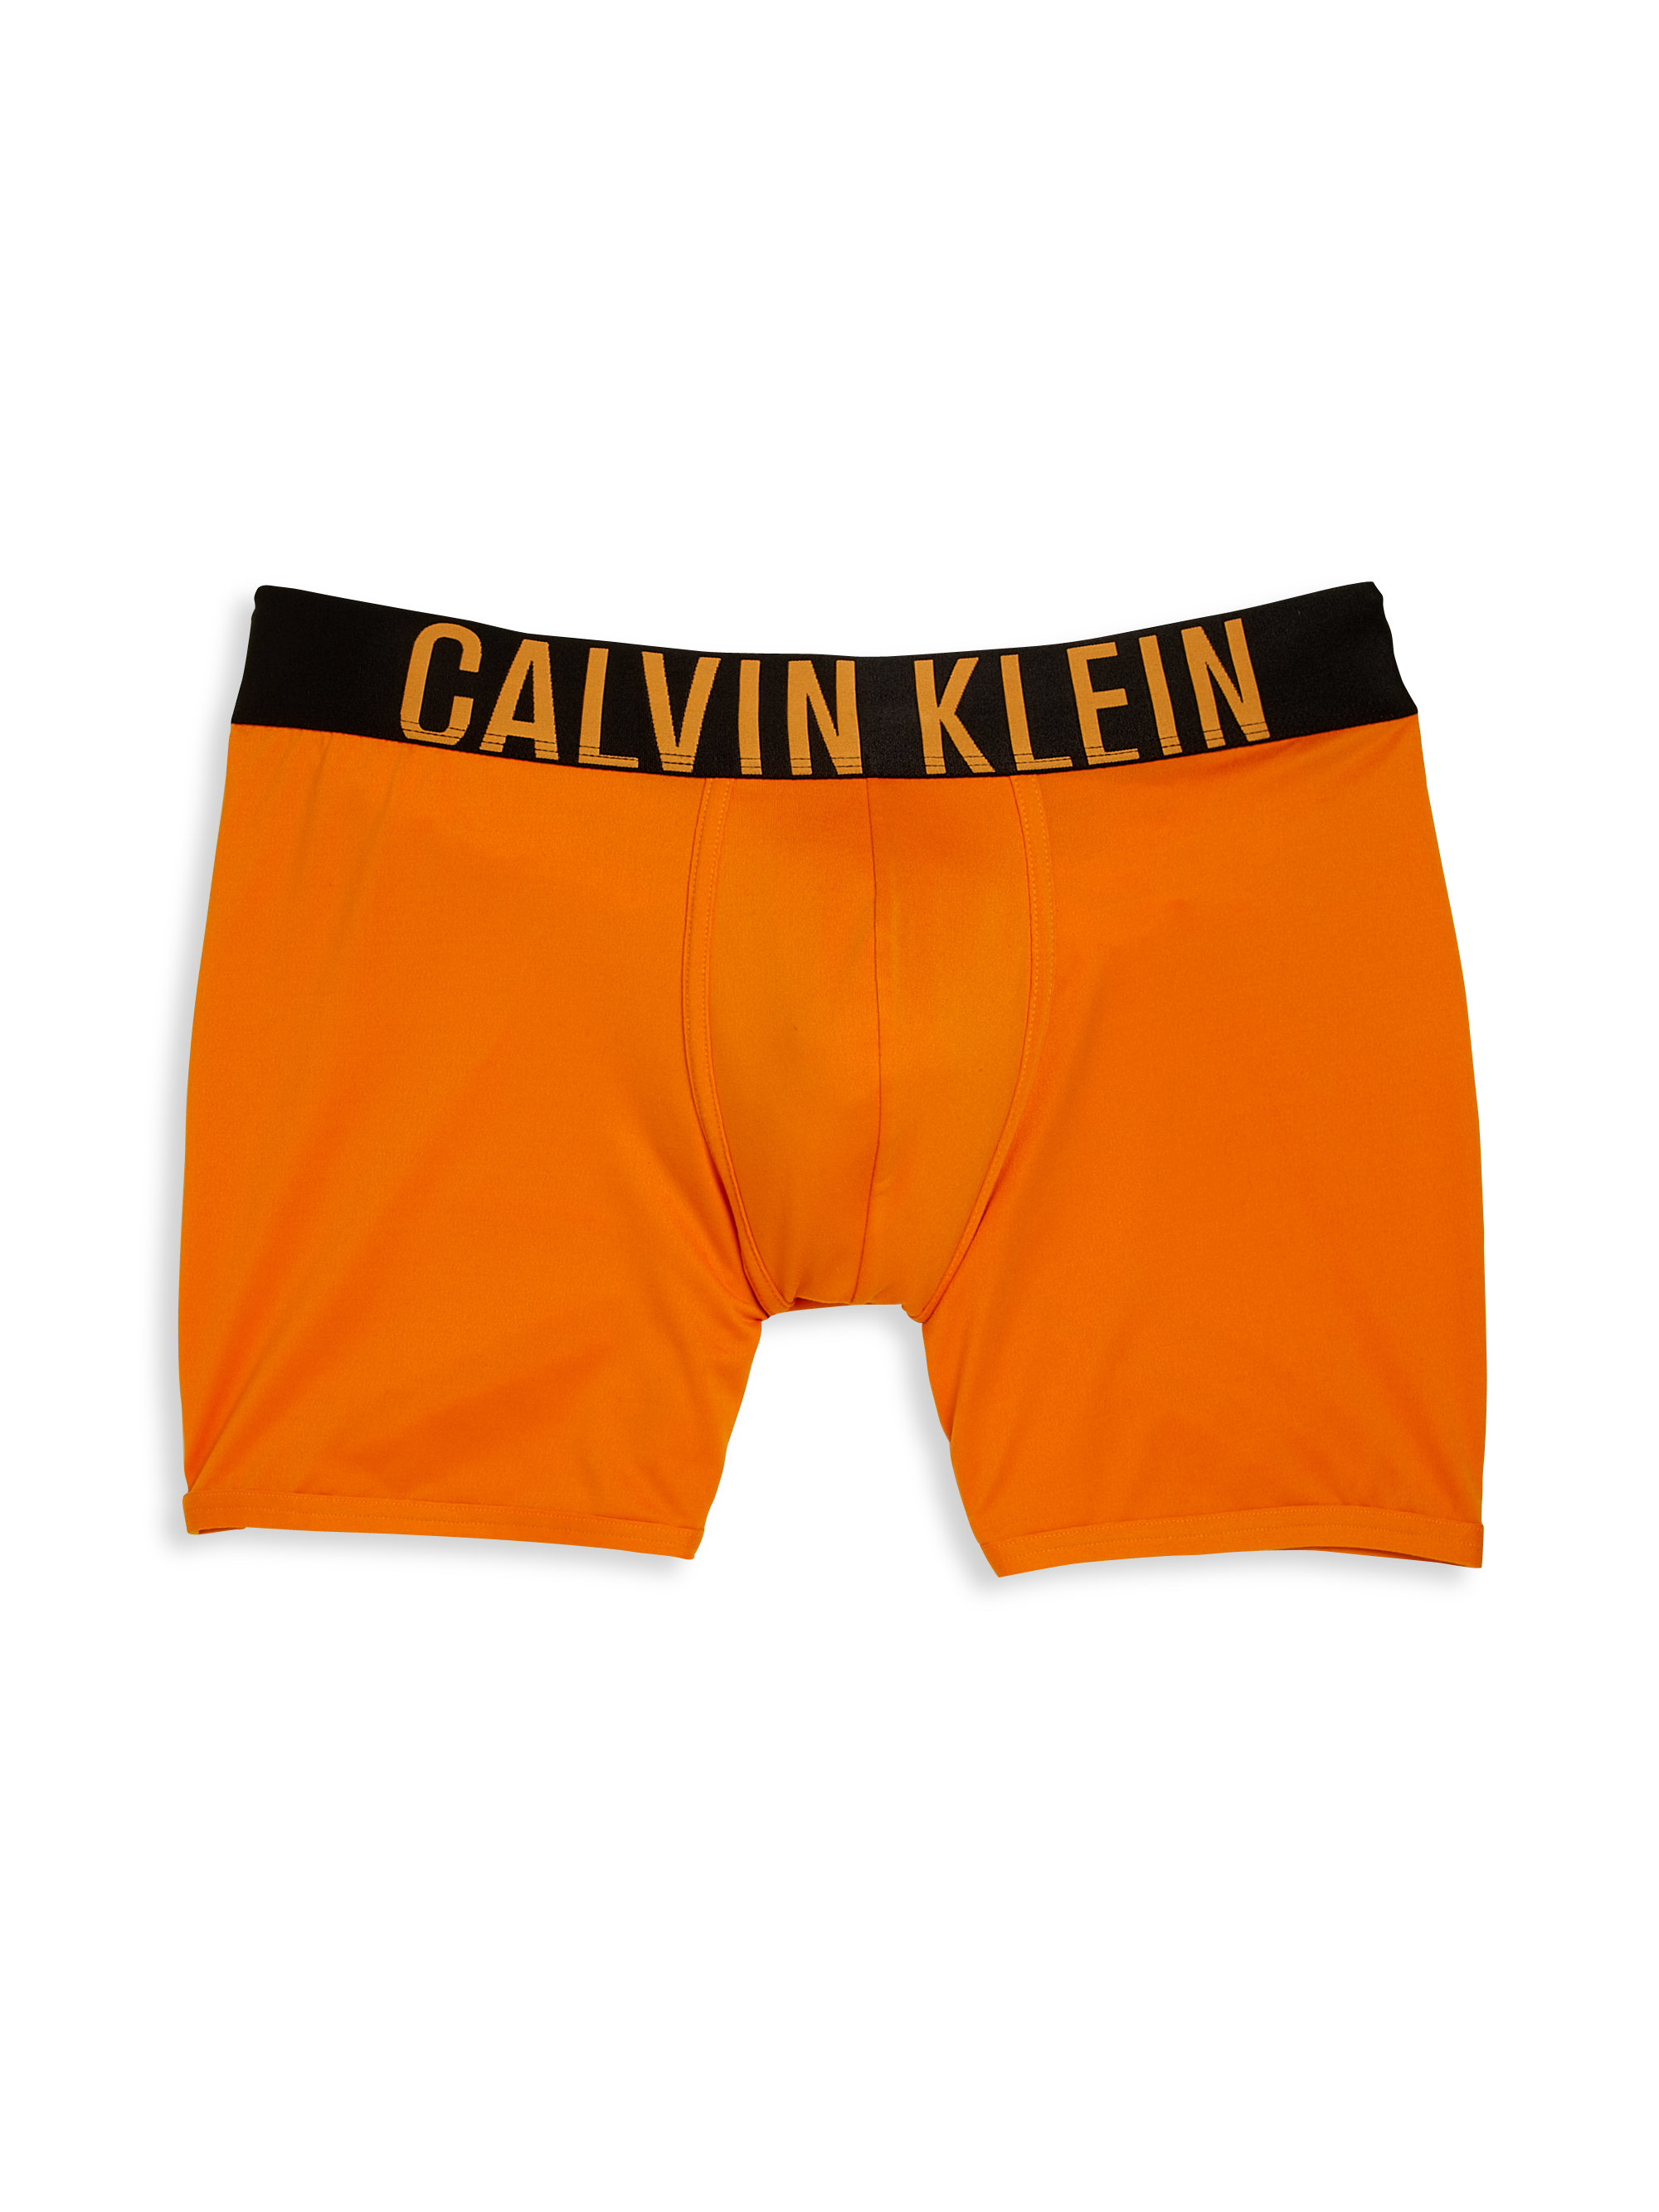 Calvin Klein Boxer Briefs In Orange For Men Lyst